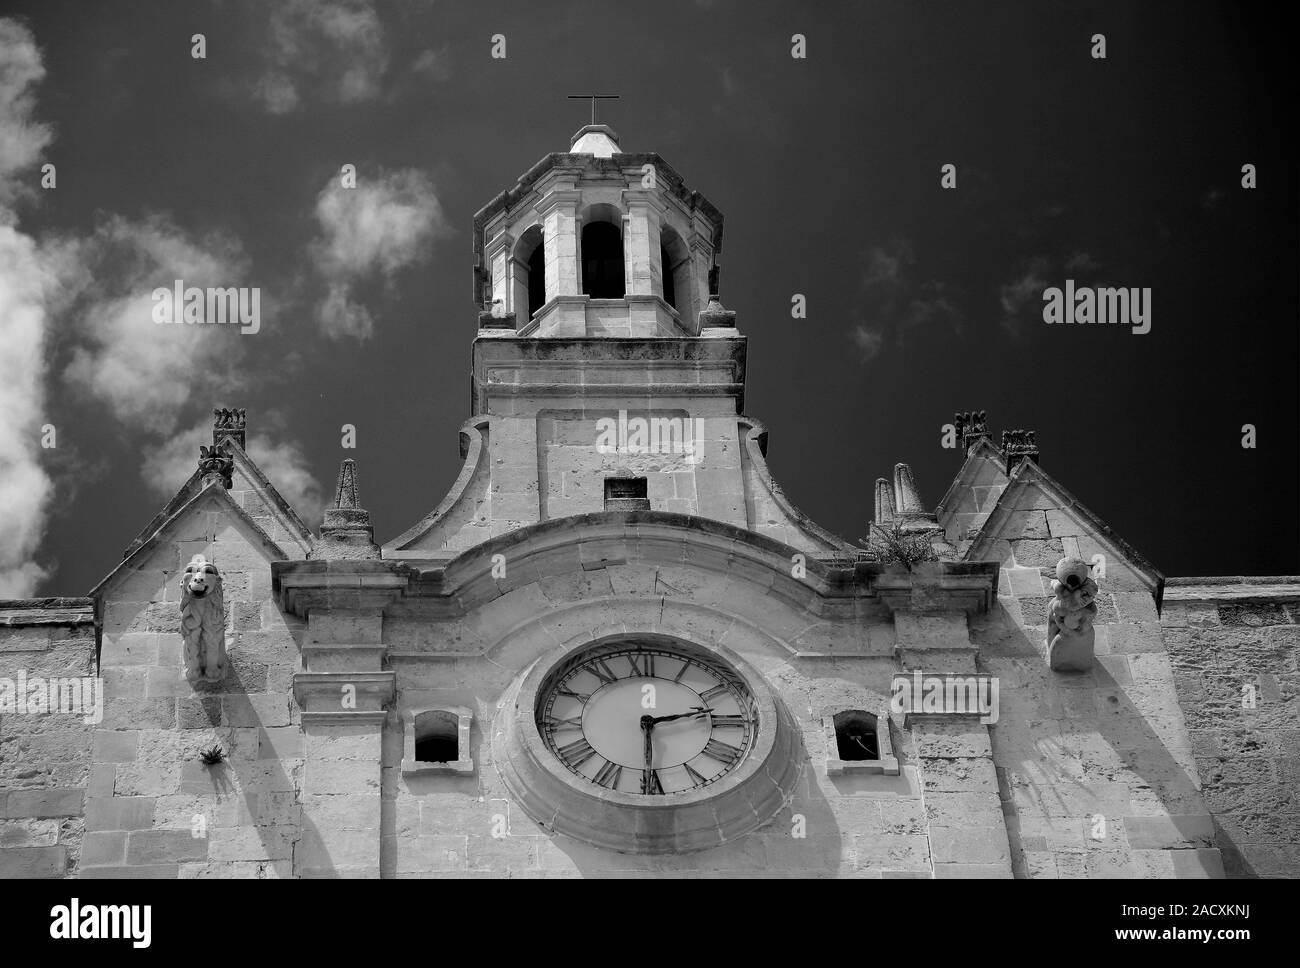 Vue extérieure de la cathédrale de Santa Maria, ville de Ciutadella, à l'île de Menorca, Baléares, Espagne, Europe Banque D'Images